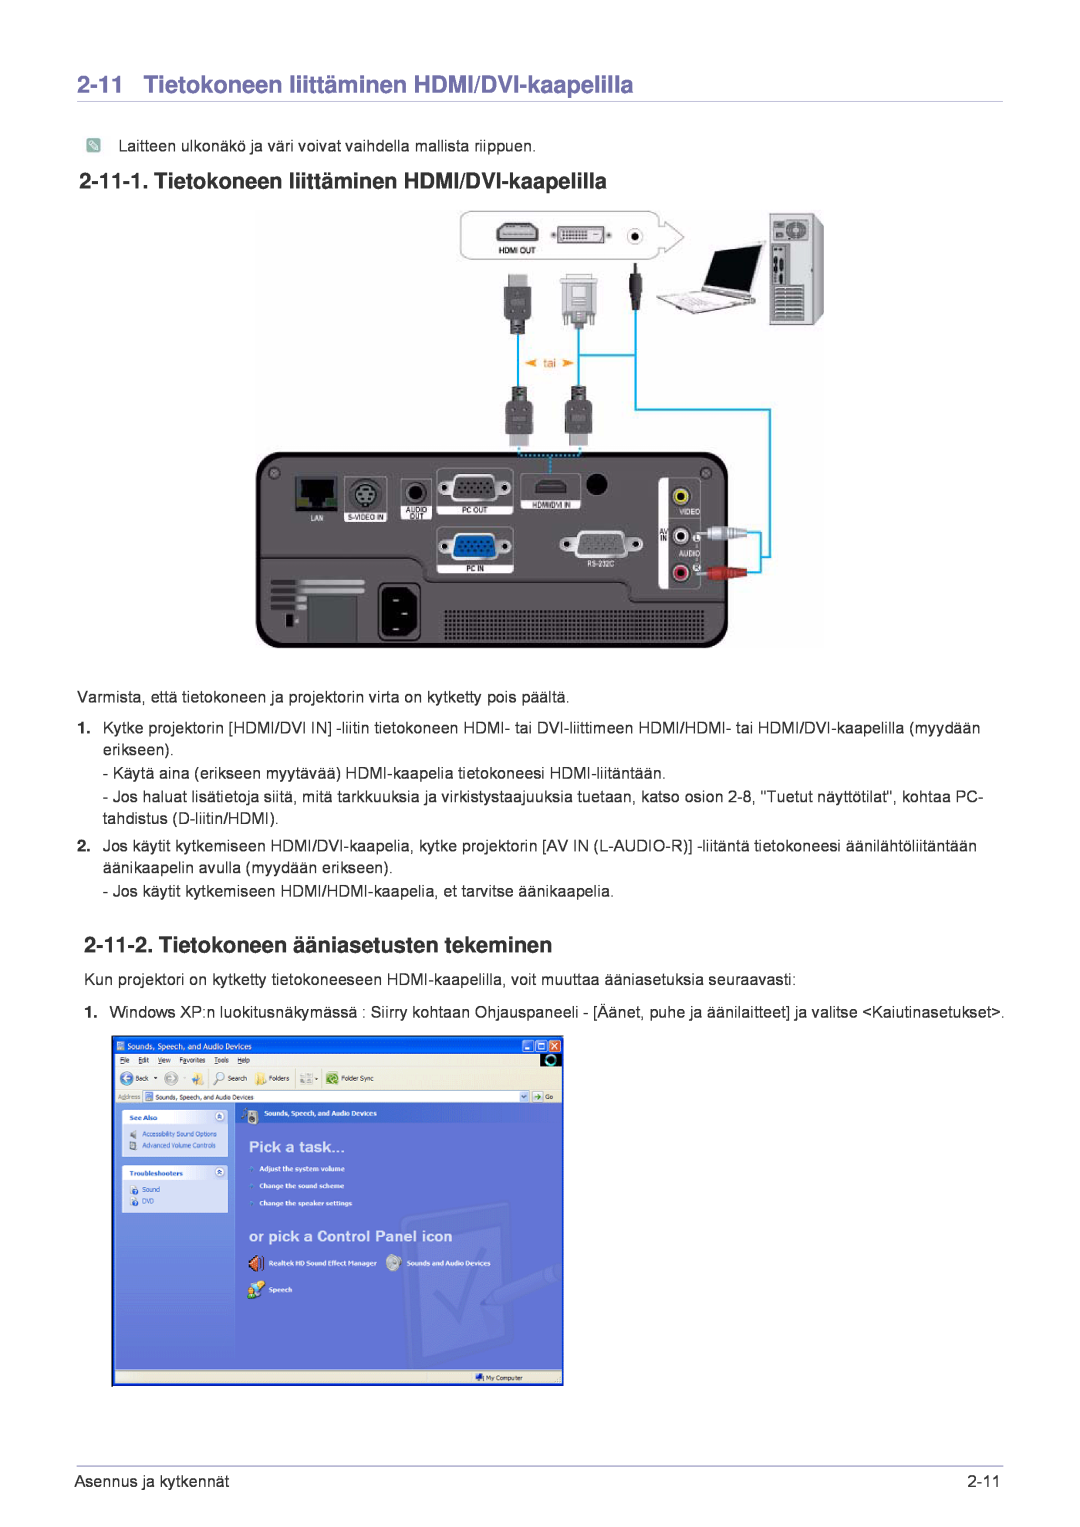 Samsung SP1005XWX/EN, SP1055XWX/EN manual Tietokoneen liittäminen HDMI/DVI-kaapelilla, Tietokoneen ääniasetusten tekeminen 